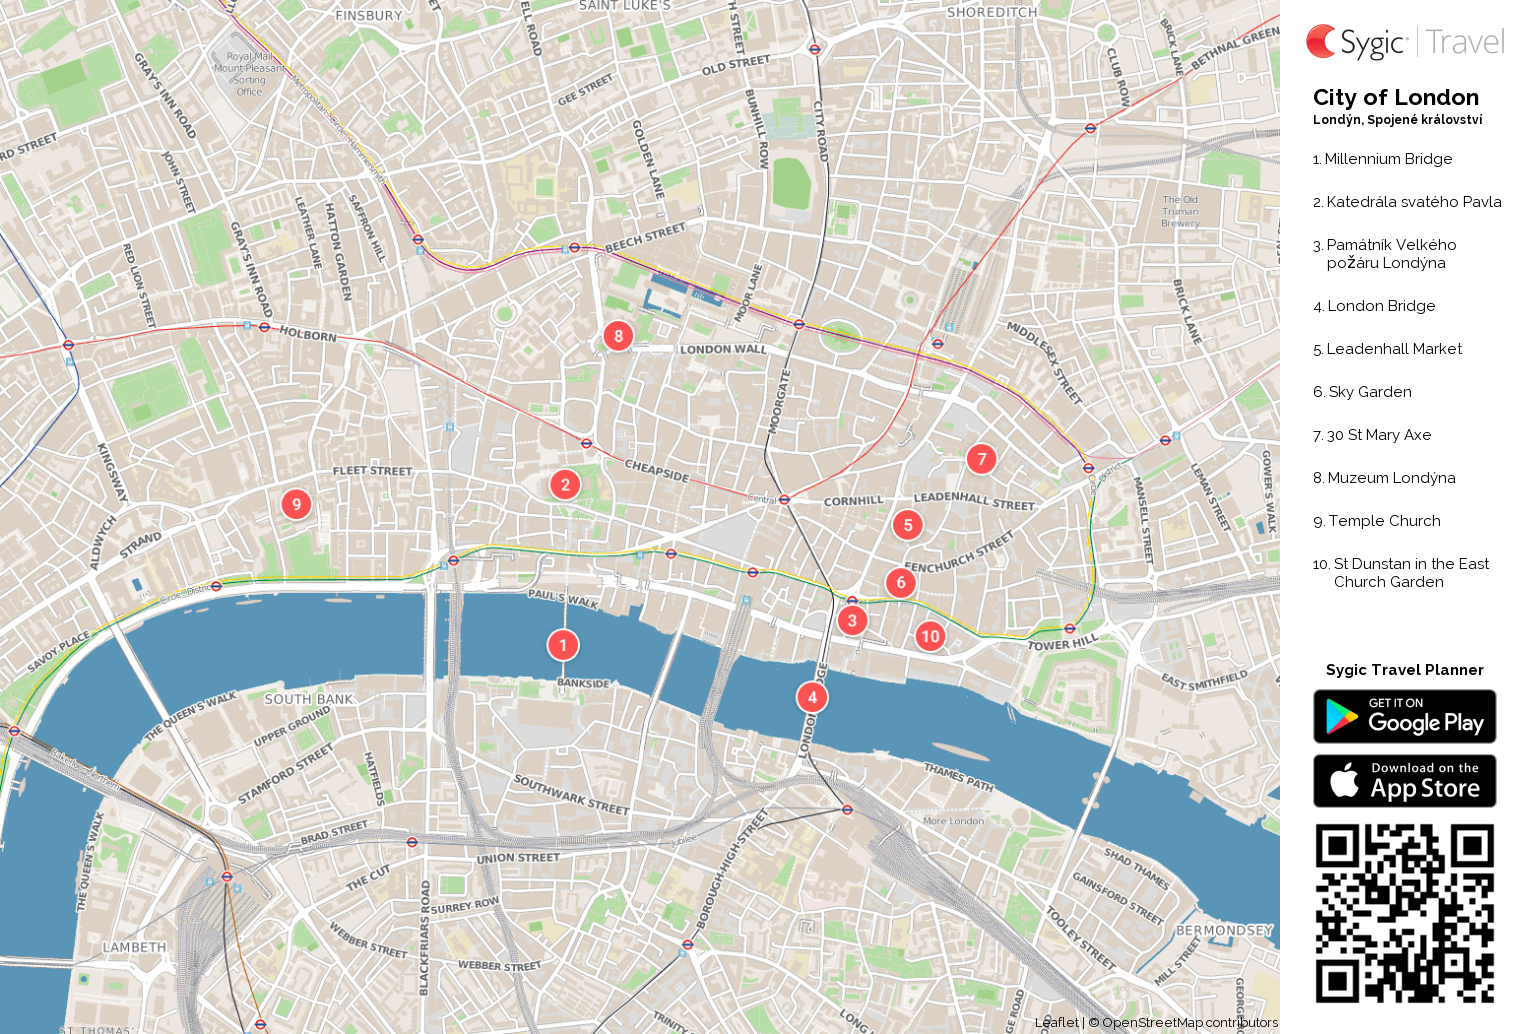 city-of-london-turisticke-mapy-k-tisku